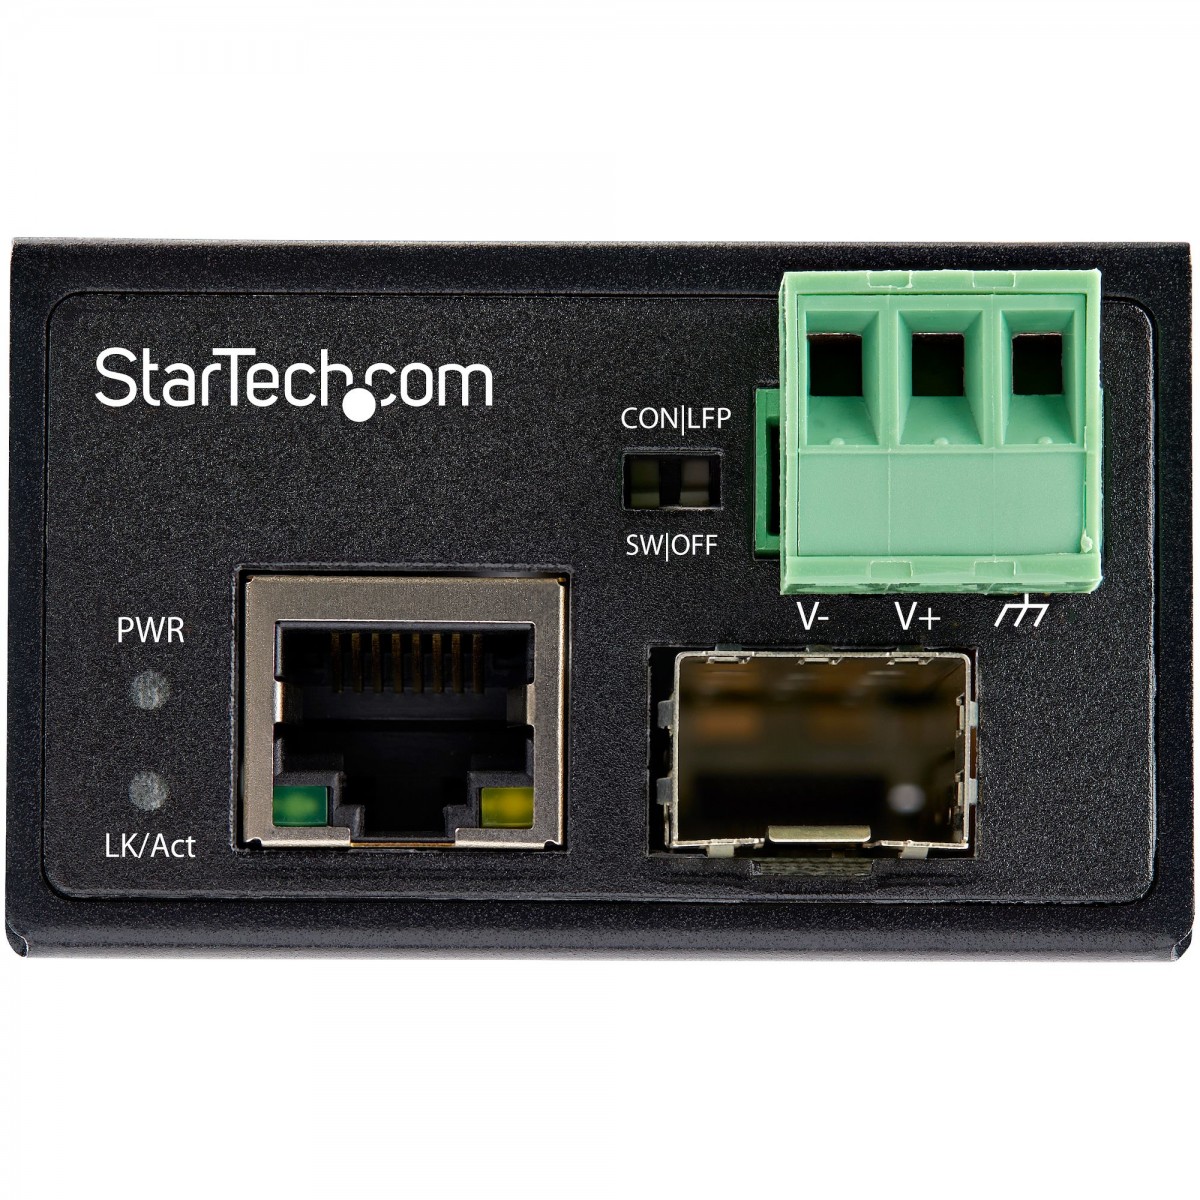 StarTech.com Industrial Fiber to Ethernet Media Converter - 100Mbps SFP to RJ45/Cat6 - Singlemode/Multimode Optical Fiber to Cop